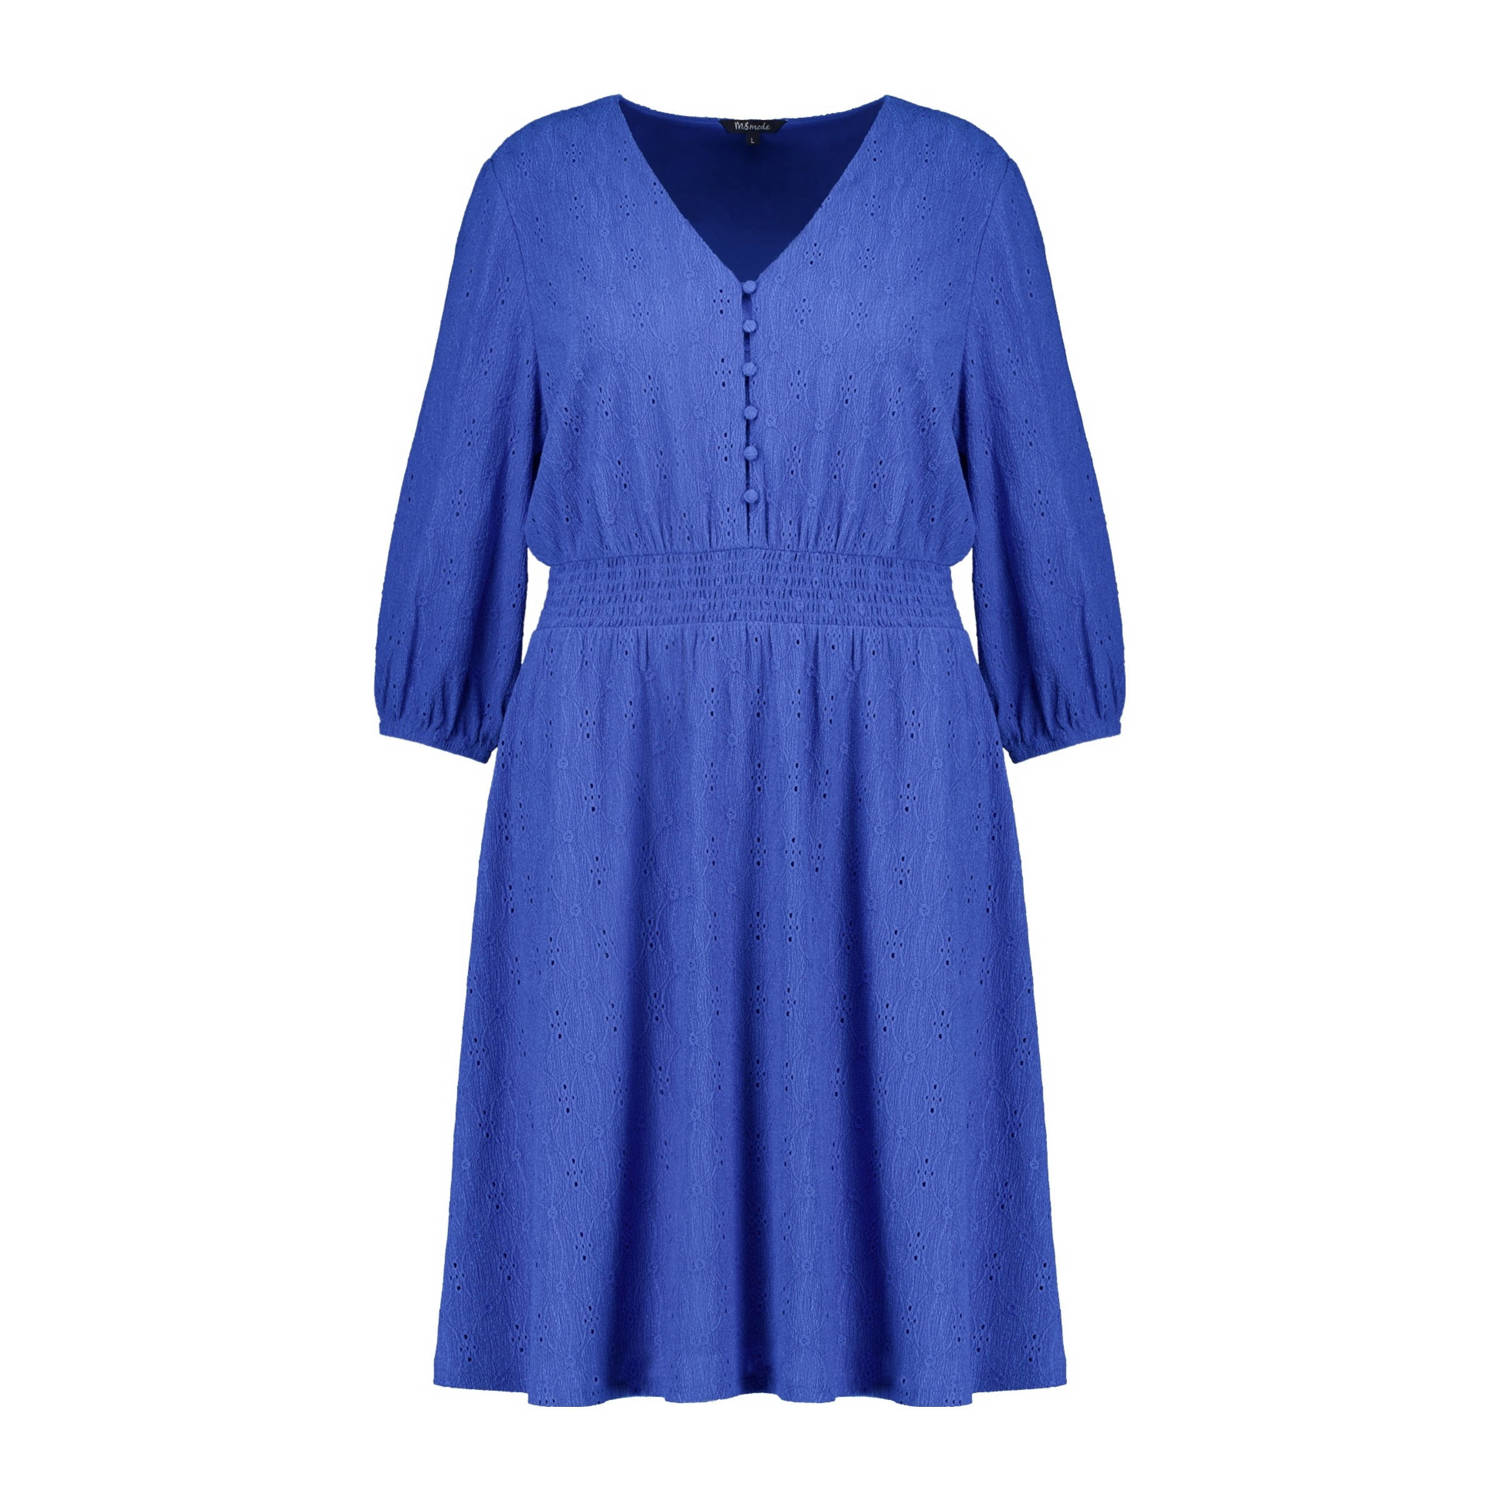 MS Mode jurk kobalt blauw